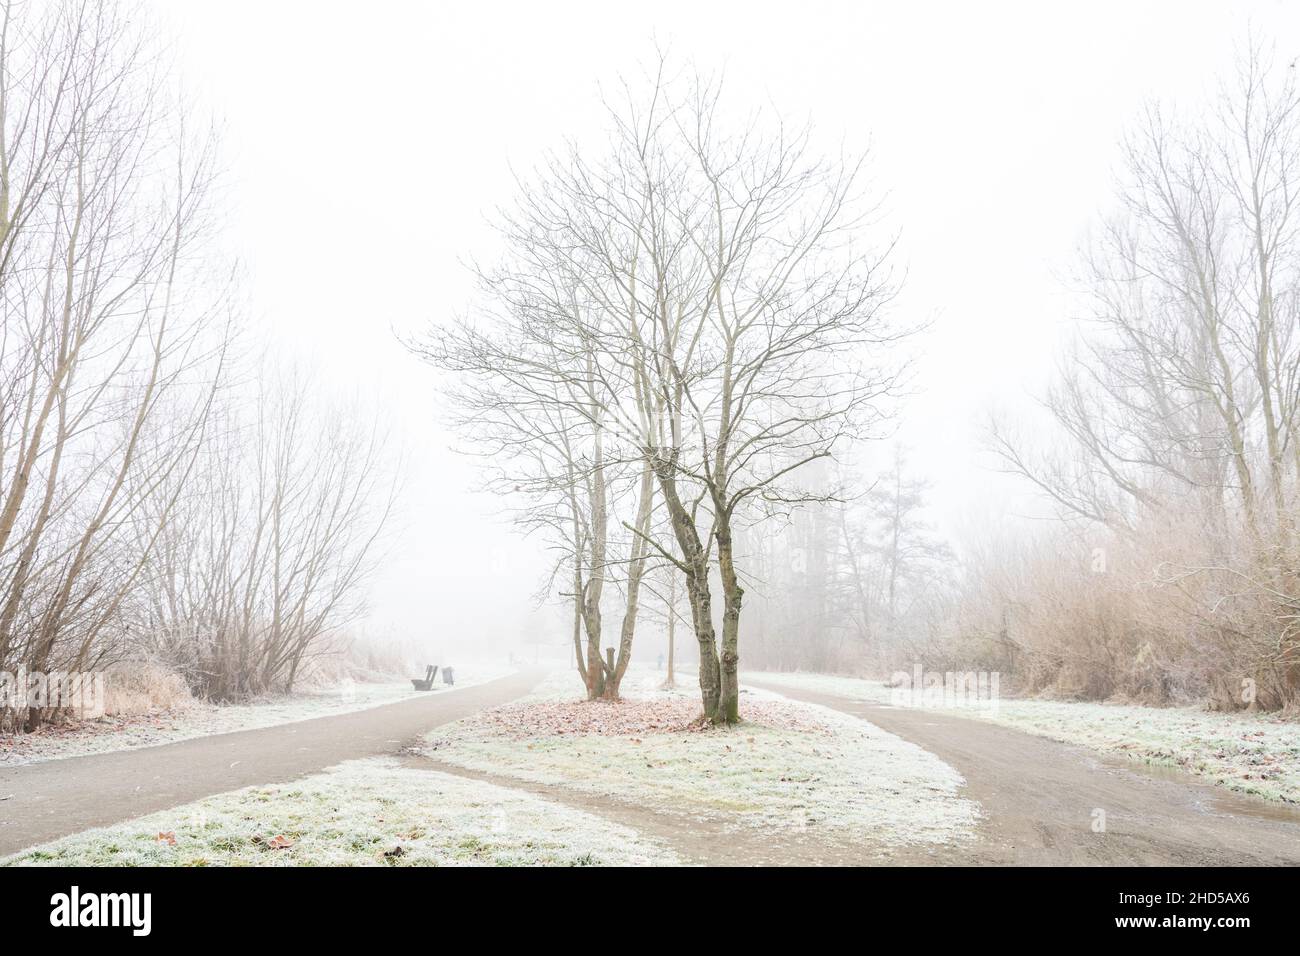 Einsam liegen die Wege im Nebel, Frost liegt auf pflanzen und Wegen nur ganz weit im Nebel ist schemenhaft eine Menschliche Gestallt zu erahnen Stock Photo